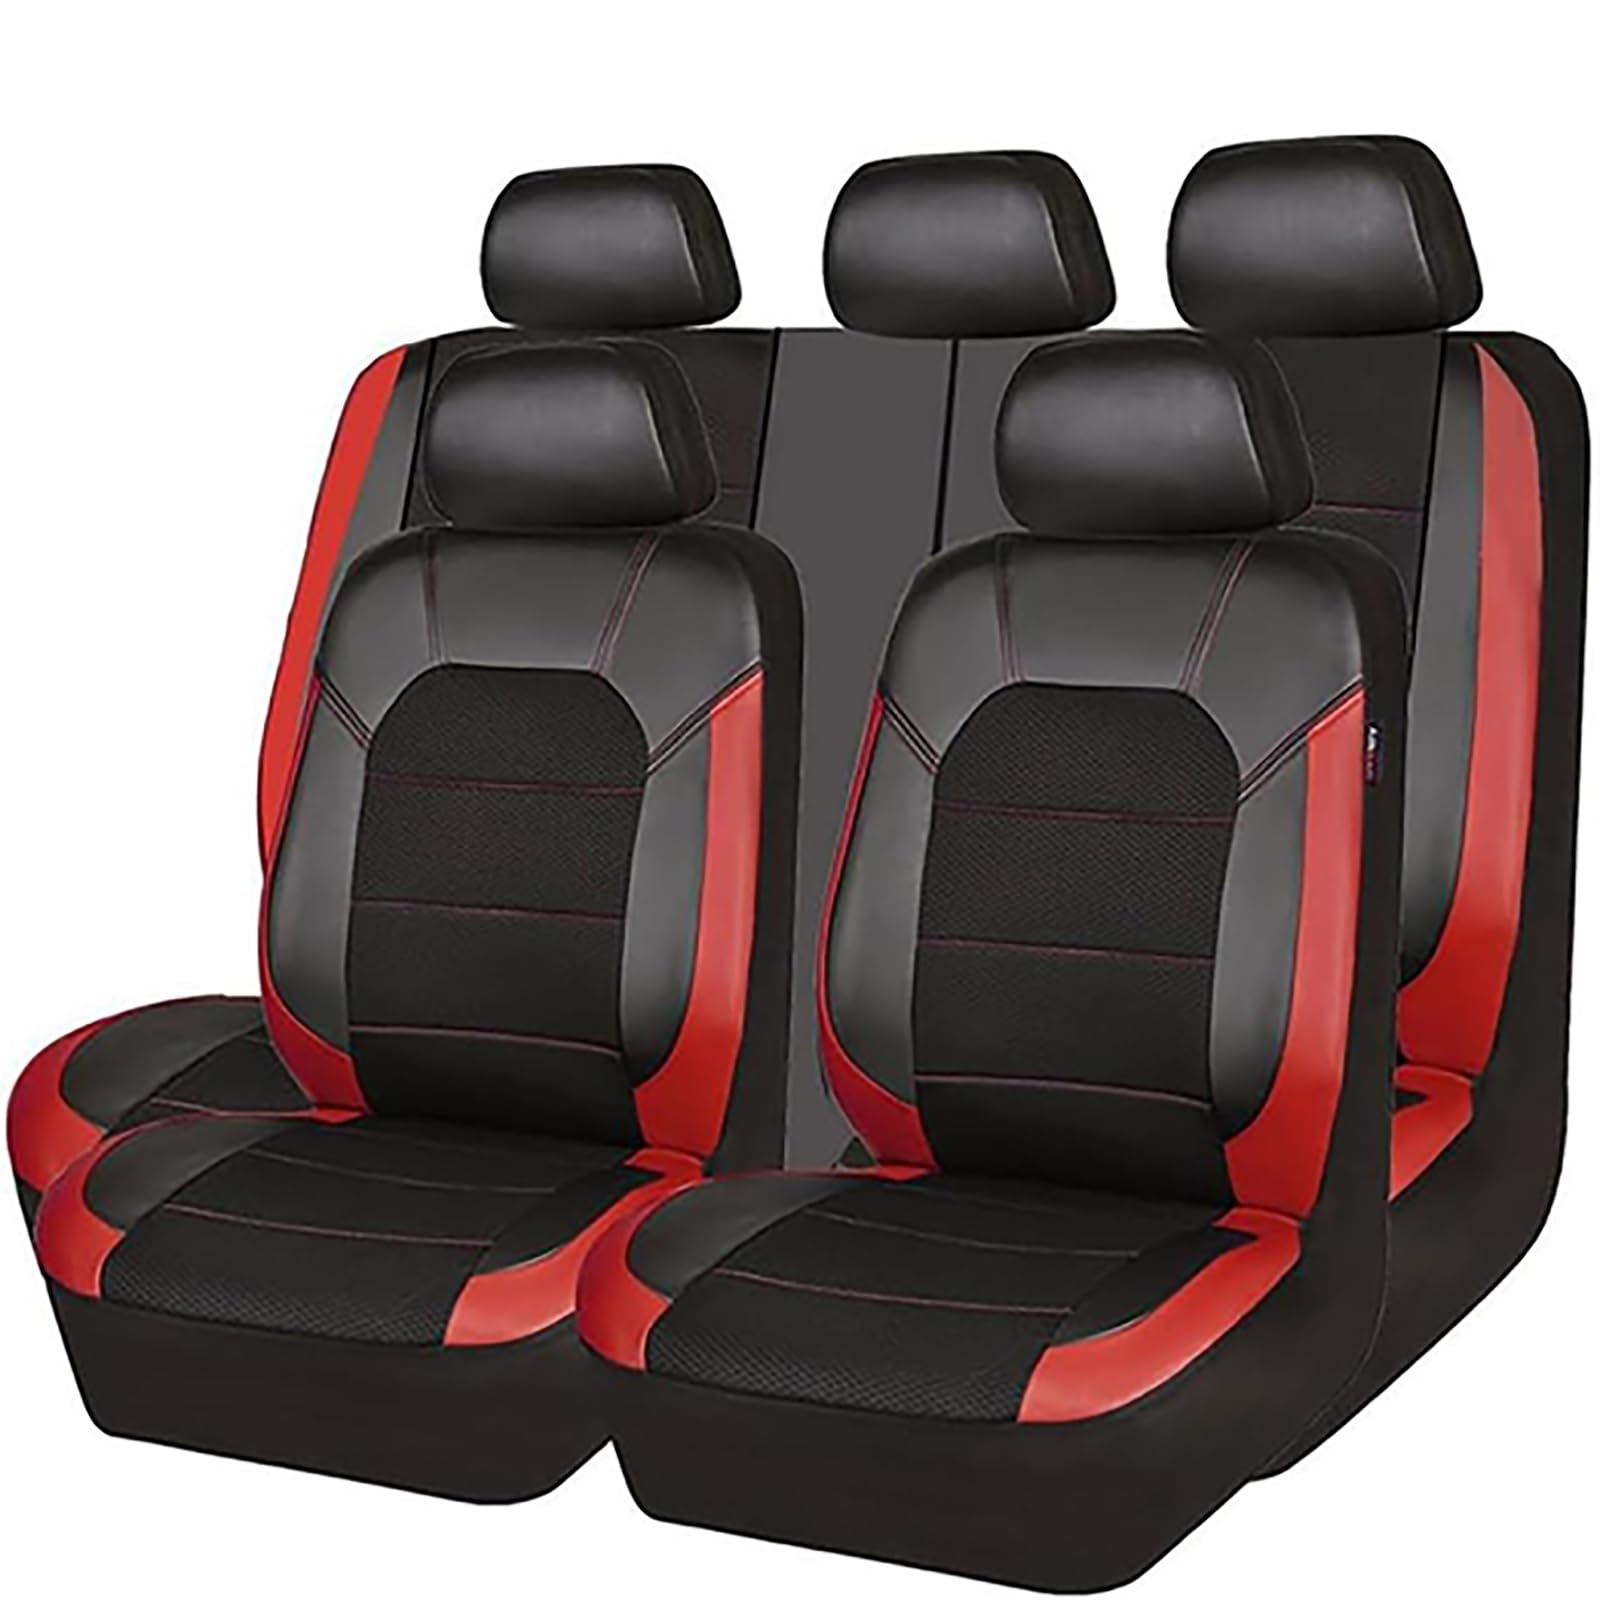 EYHQKRTR Auto Leder Sitzkissen Für VW Golf-VII 2014-2020, 5 Sitzer Full Set SitzbezüGe Schonbezug Vorne Rückbank Sitzschutz Compatible Airbag Innenraum Zubehör,D/Red von EYHQKRTR